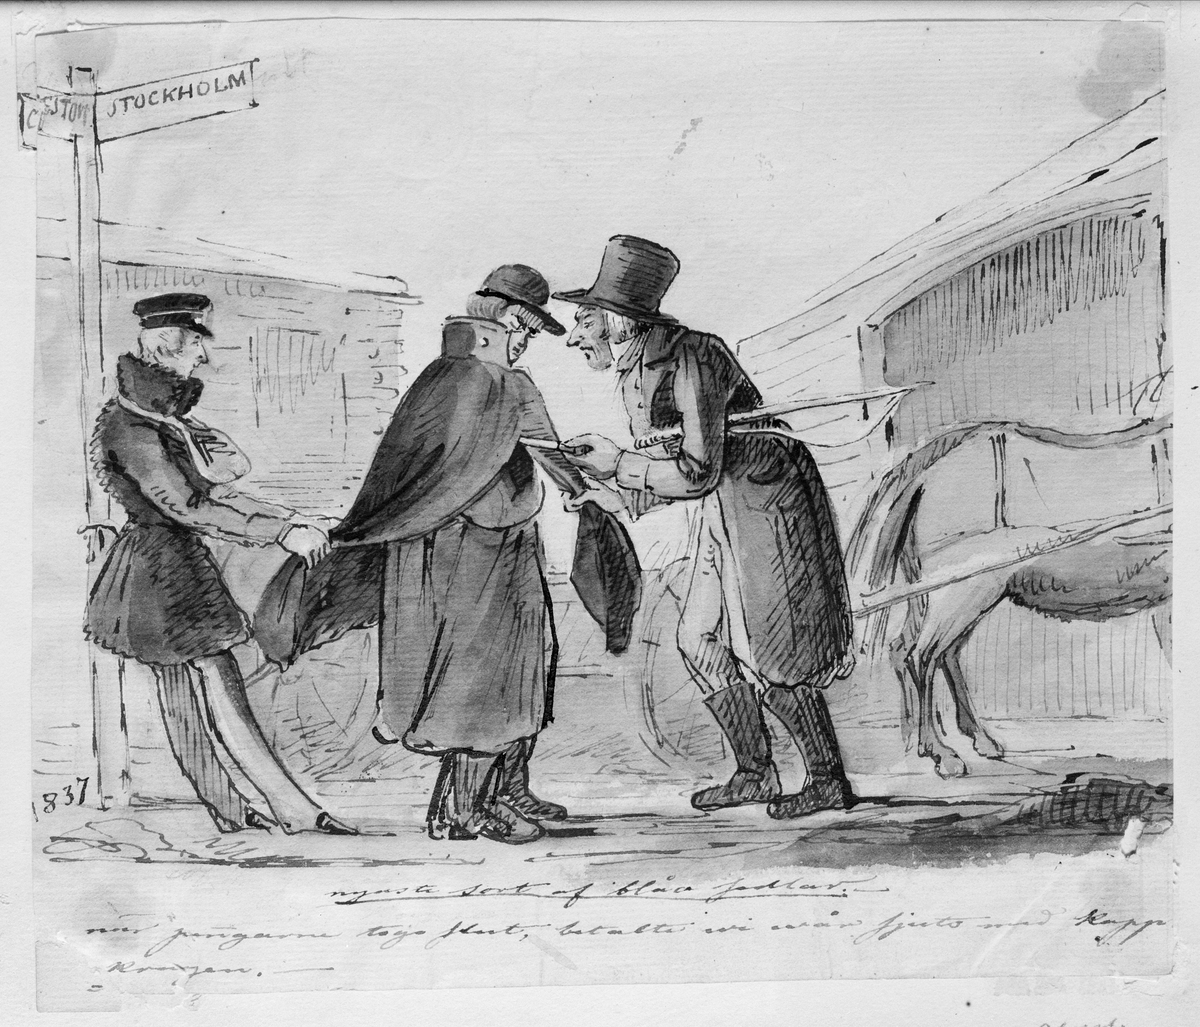 Hästskjuts. "Nyaste sort af blåa sedlar. När pengarna togo slut, betalte vi vår skjuts med kappkragen." Teckning av Fritz von Dardel, 1837.